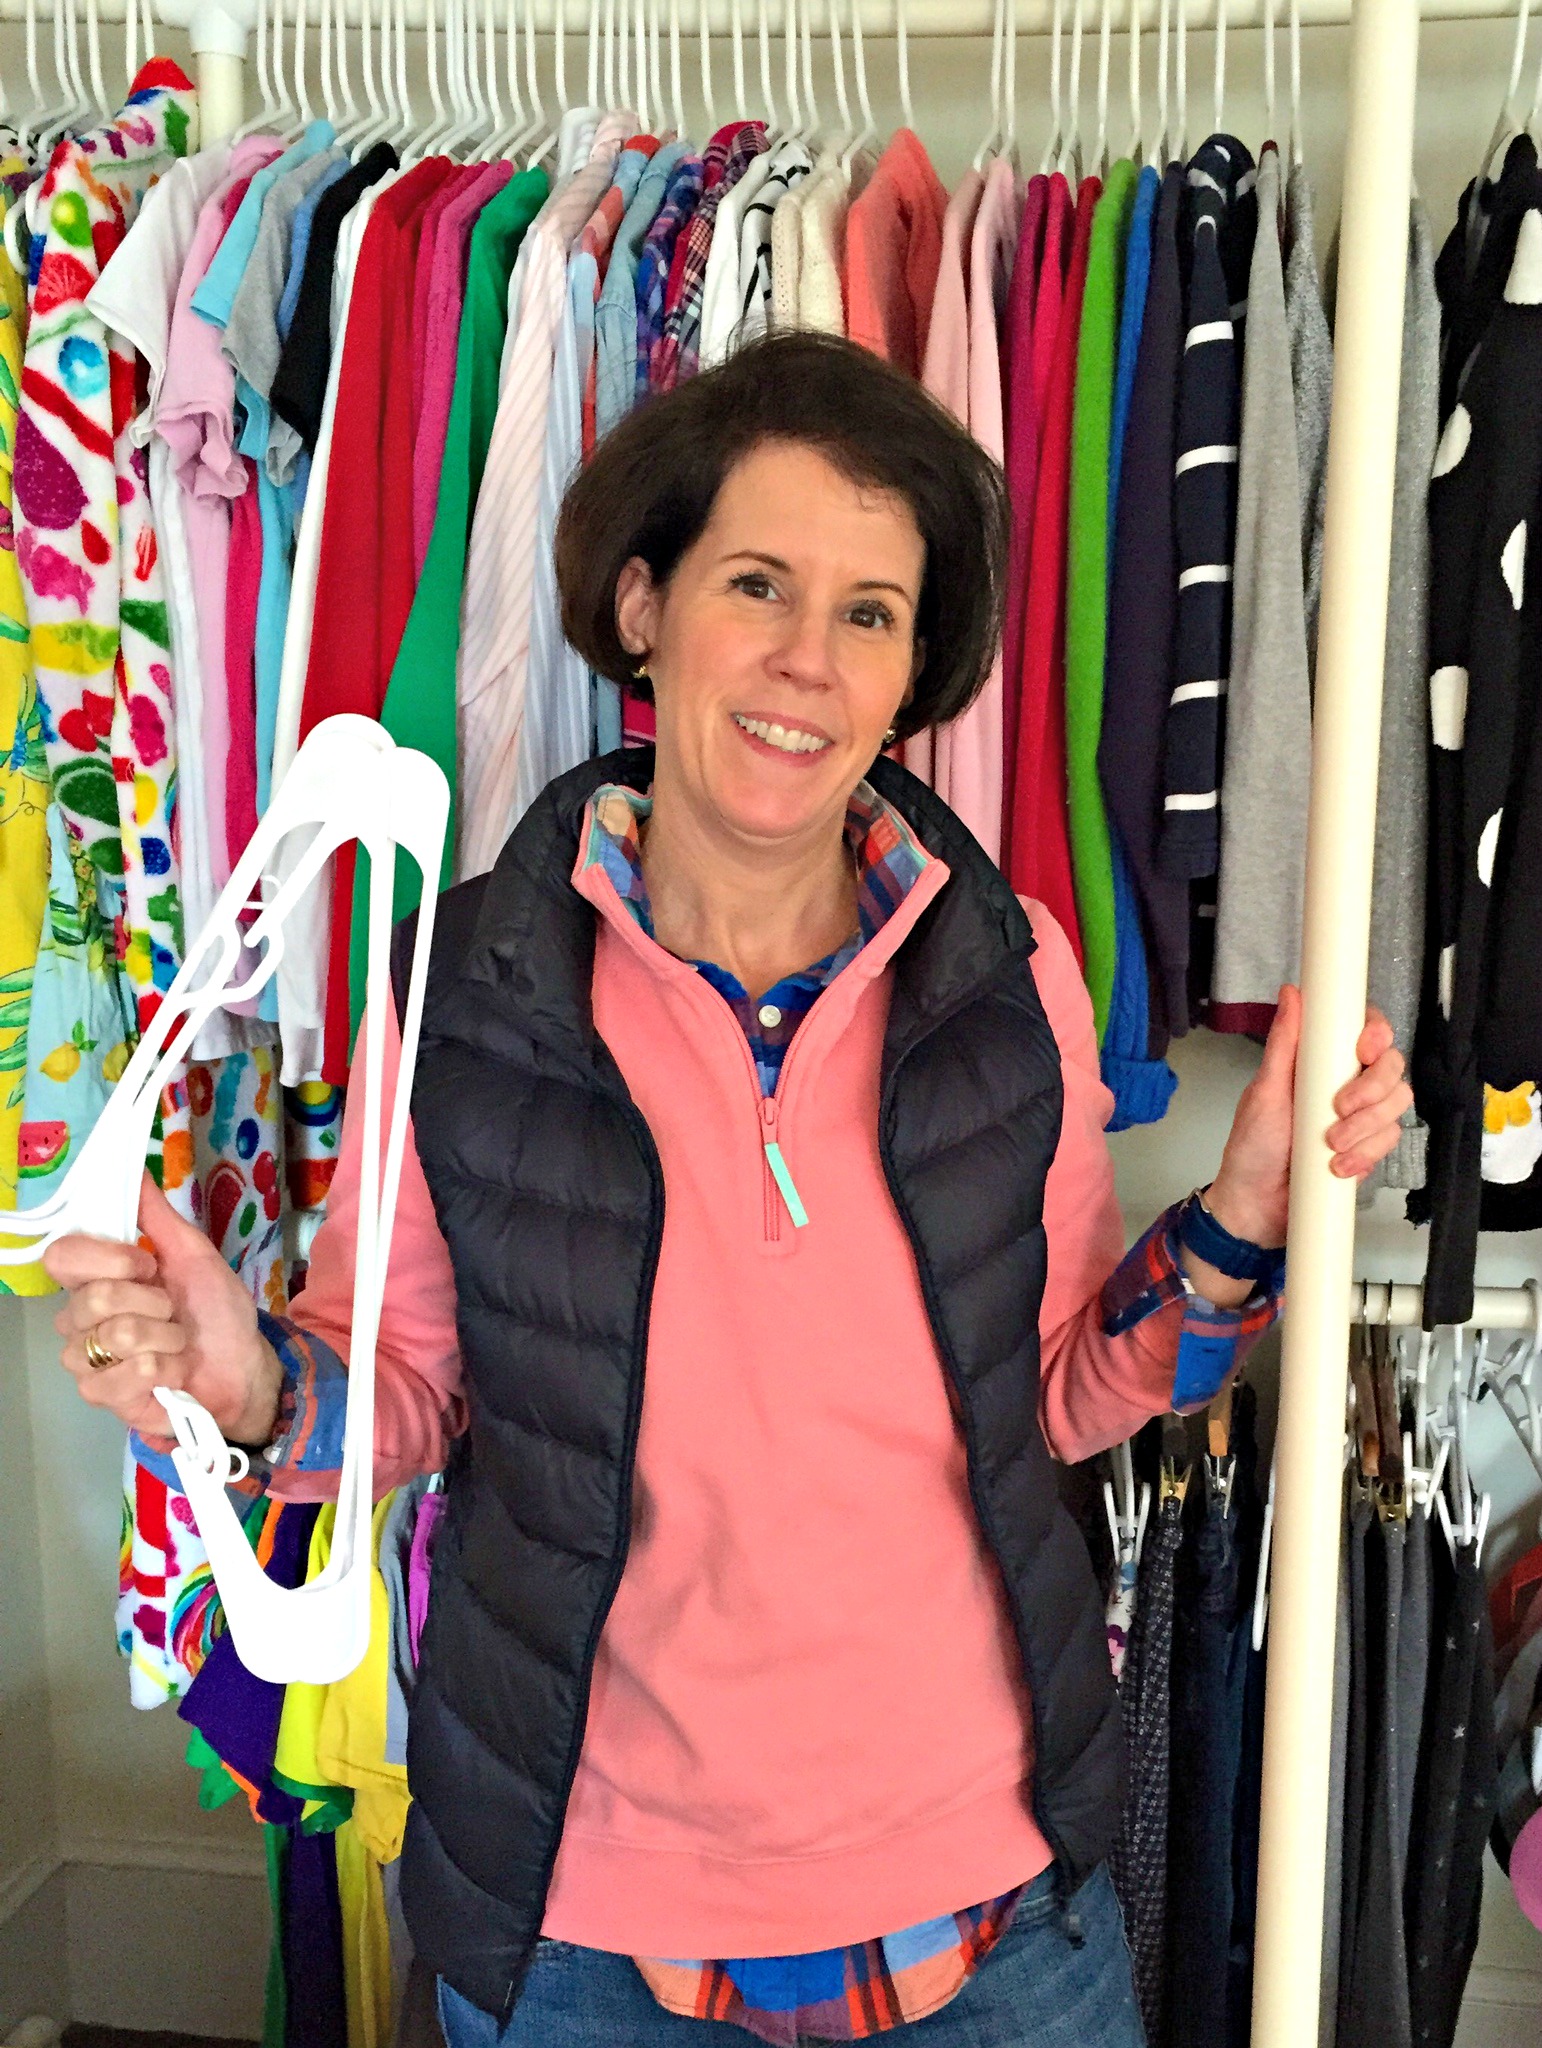 closet organizing - The DIY Dutchess shares great tips